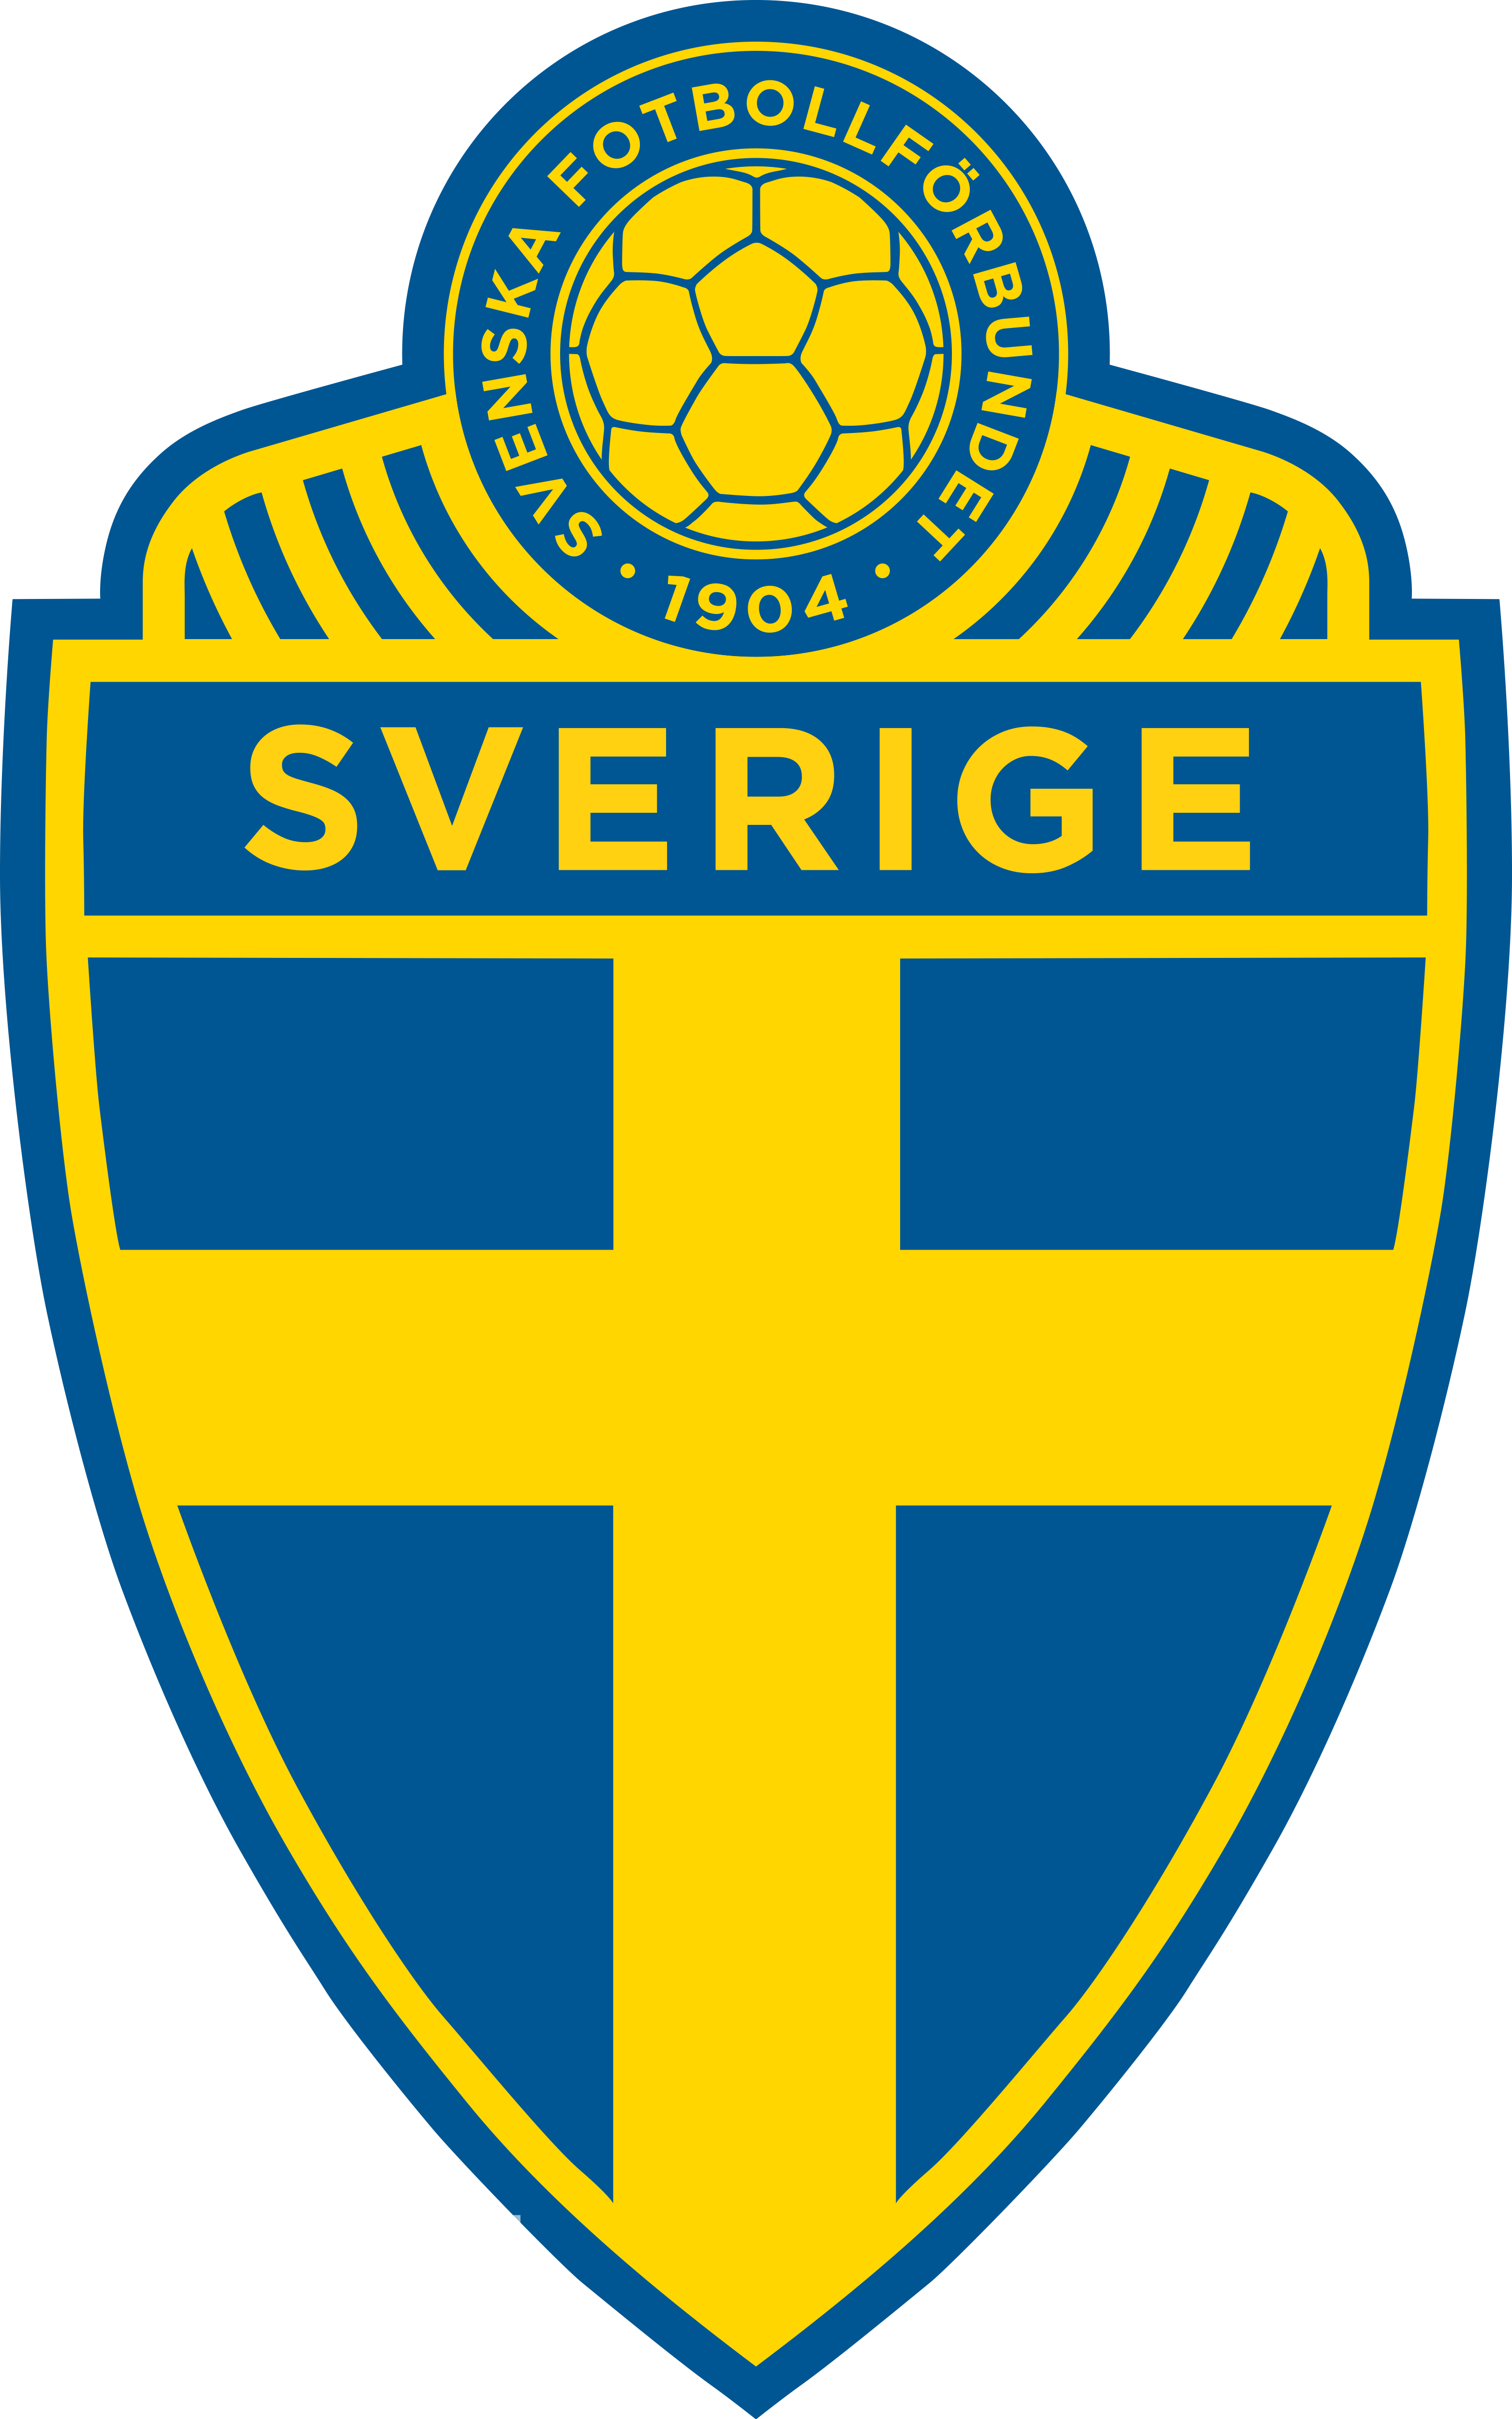 瑞典國家隊(瑞典國家男子足球隊)